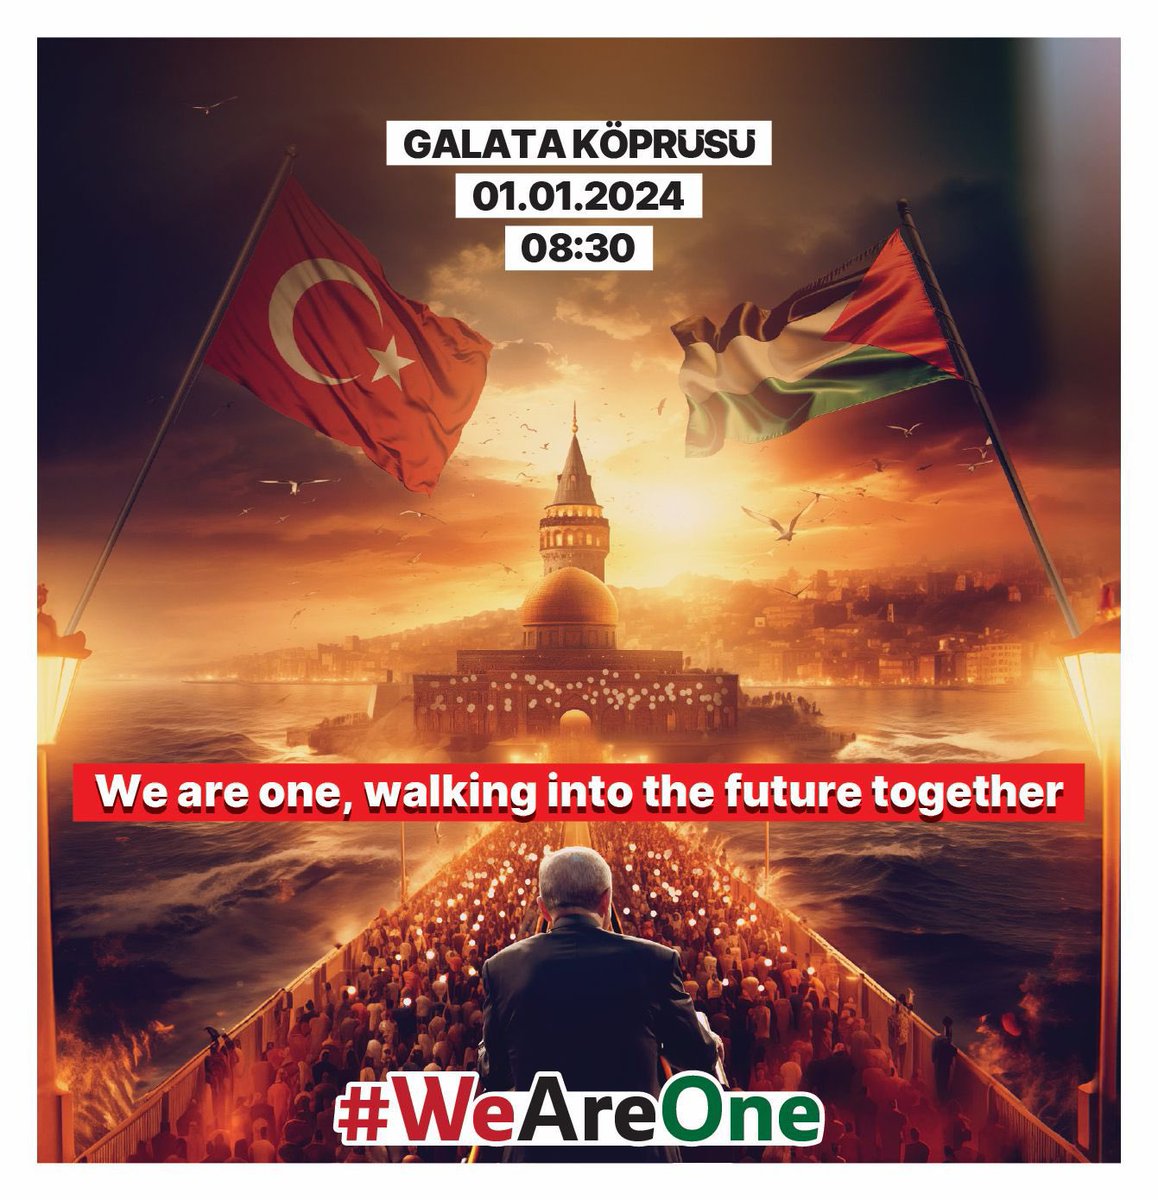 Tüm dünyaya tarihi bir çağrıda bulunuyoruz! Yeni yılın ilk saatlerinde, Filistinli kardeşlerimiz için dünyayı ayağa kaldıracağız… Susmayacağız, haykıracağız! Durmayacağız, yürüyeceğiz! #WeAreOne #FreeGazaNow 📅 Tarih: 1 Ocak 2024 🕒 Saat: 08.30 📍 Galata Köprüsü